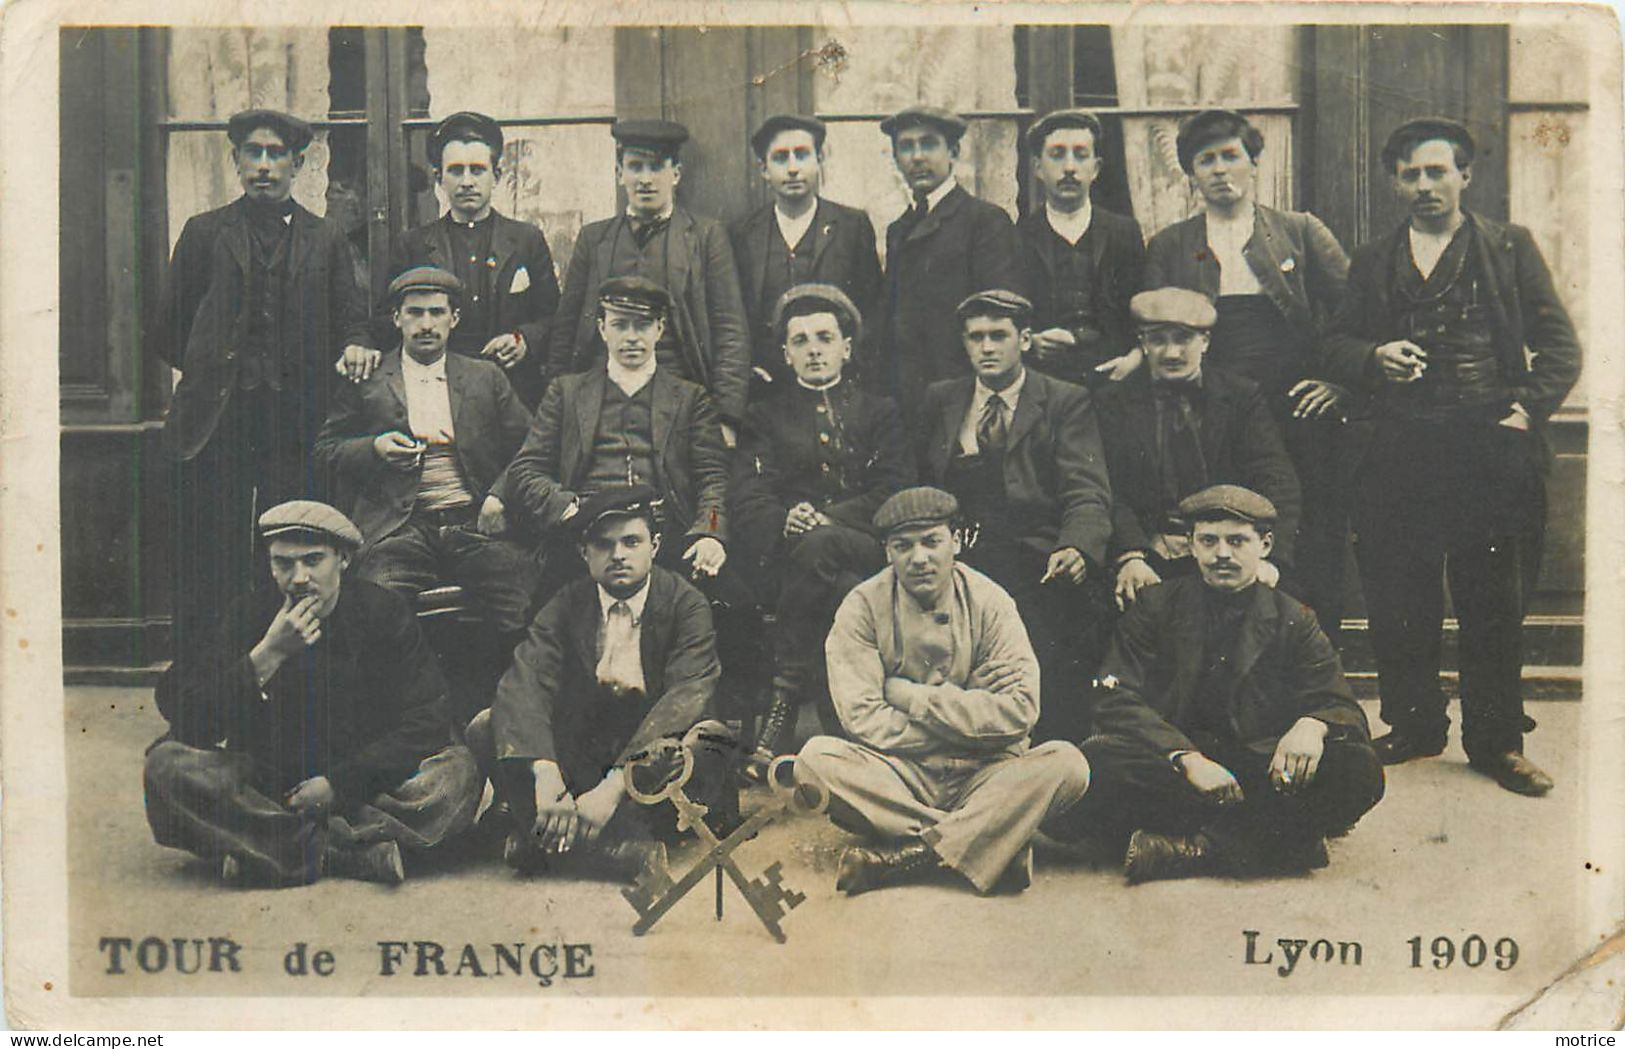 TOUR DE FRANCE (Compagnons) - Carte Photo 1909, Serruriers. - Artesanal